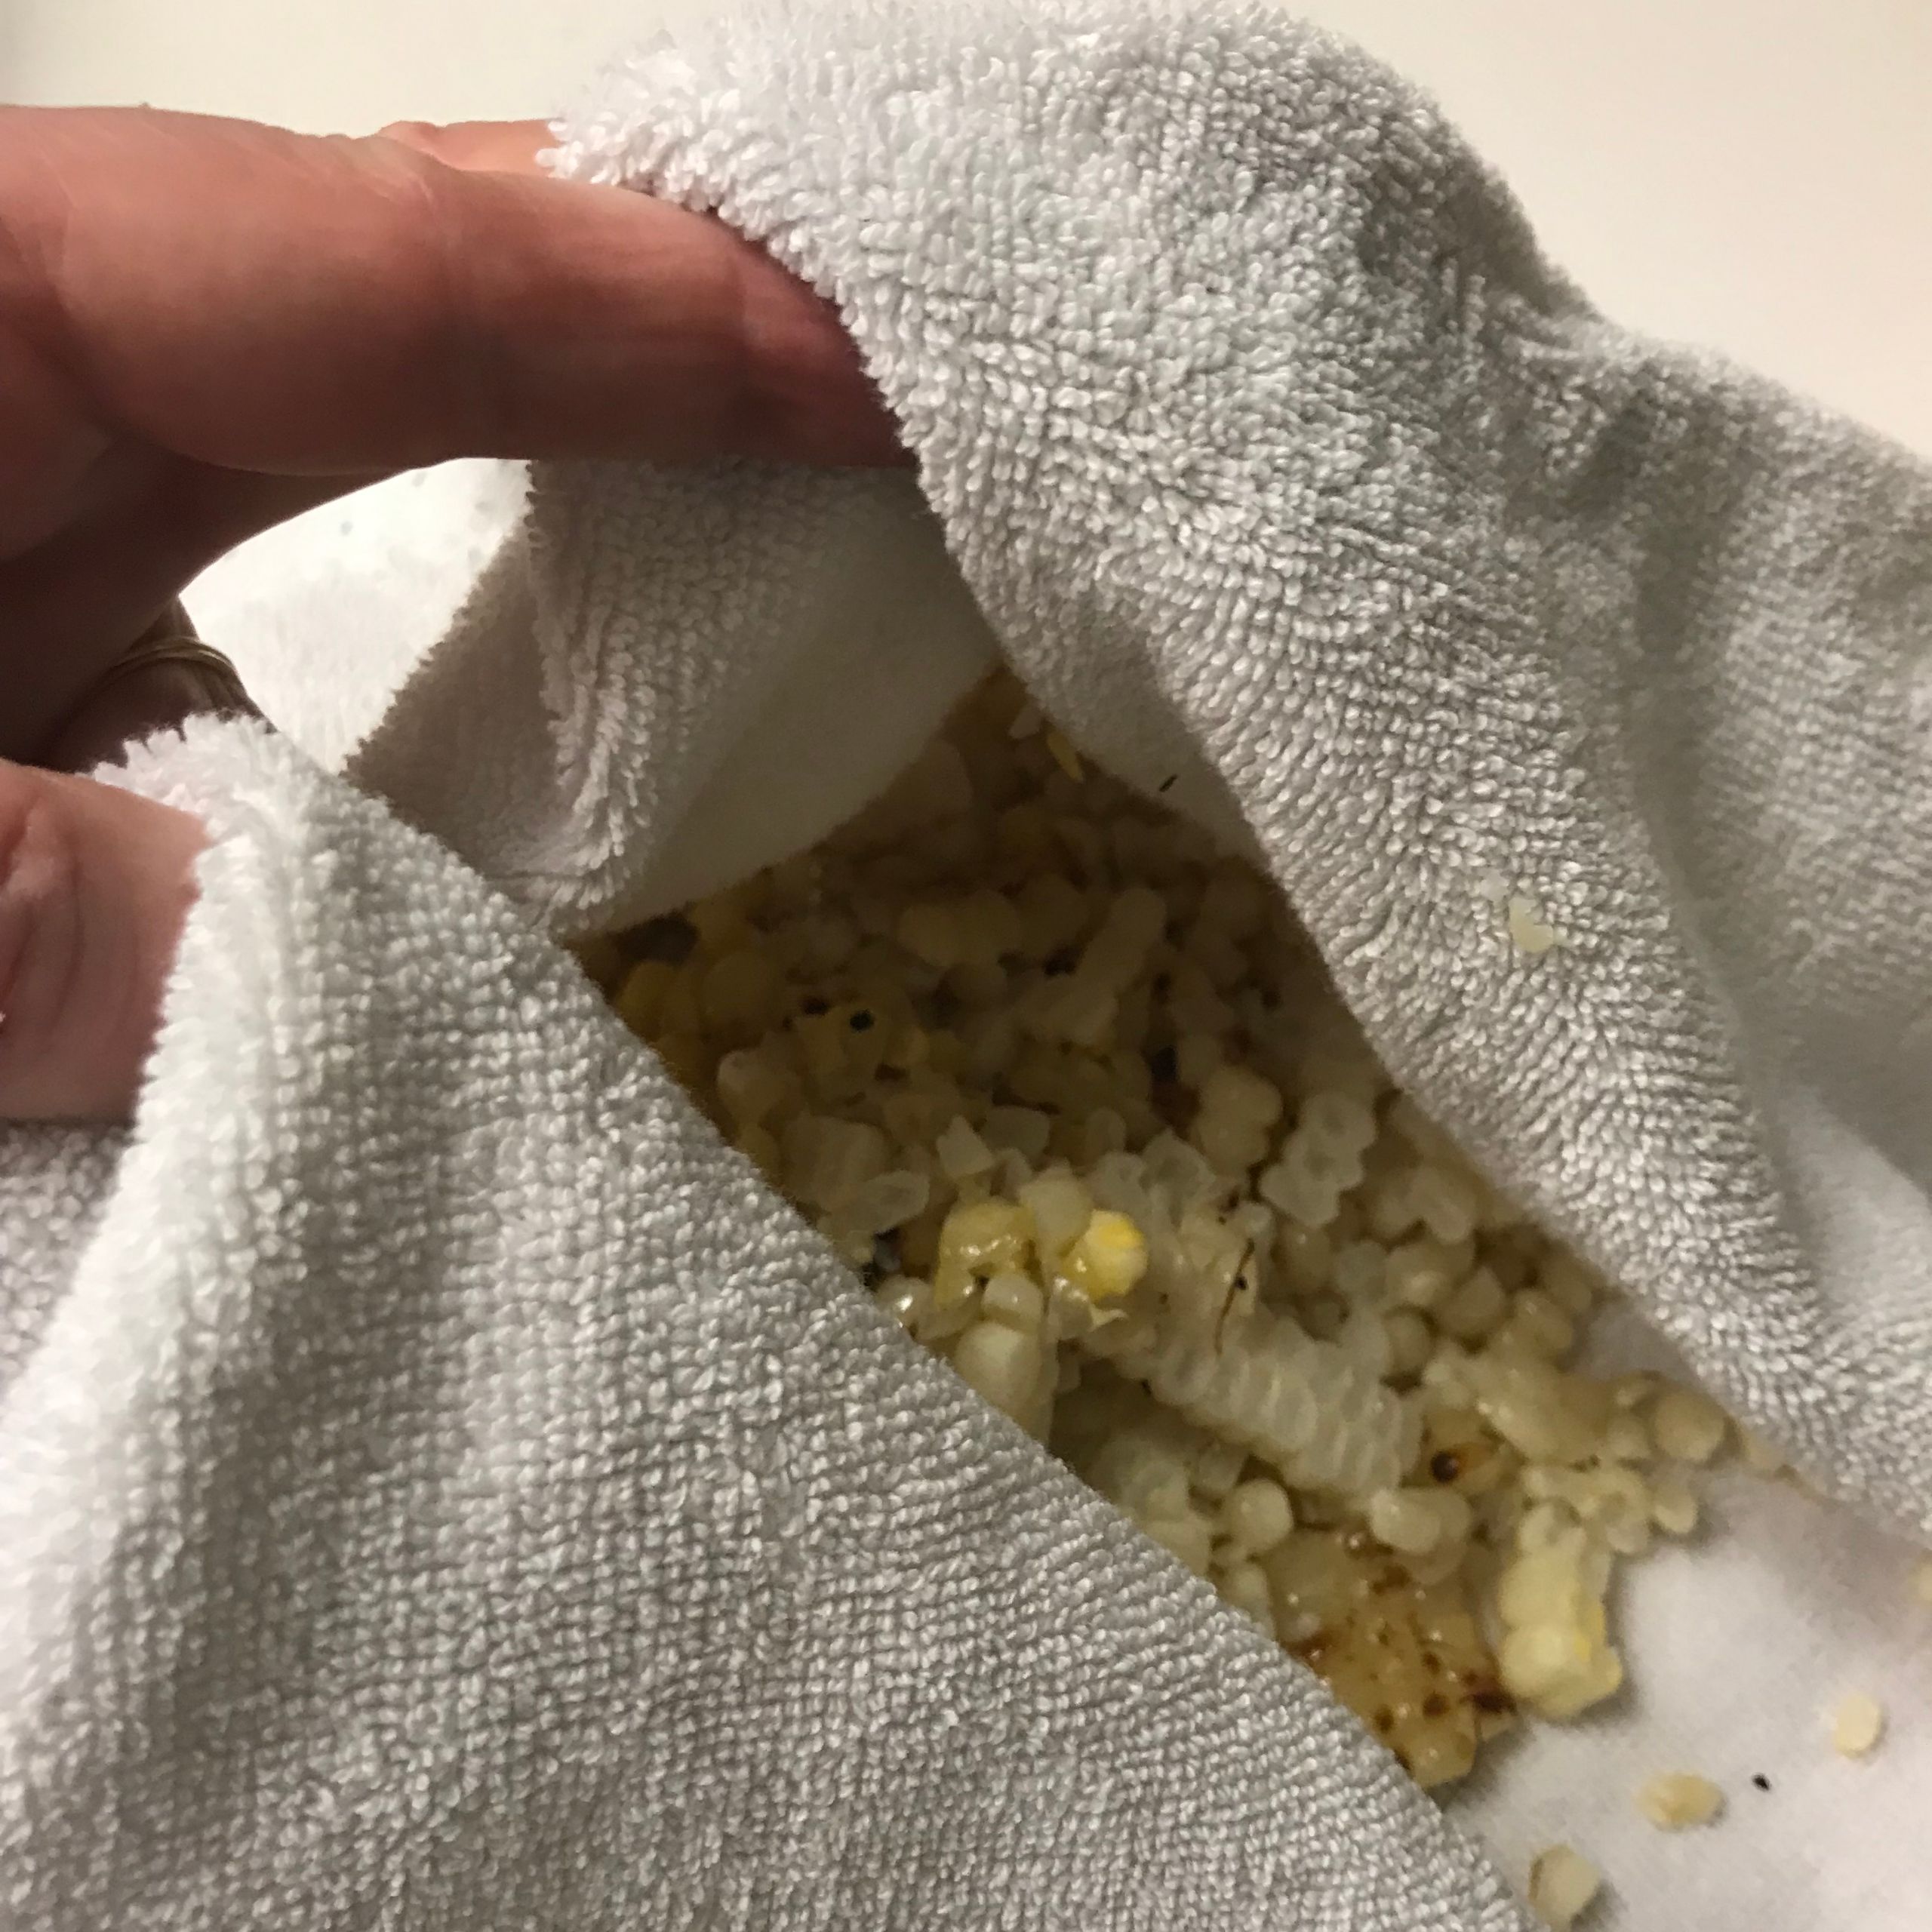 corn kernals in towel